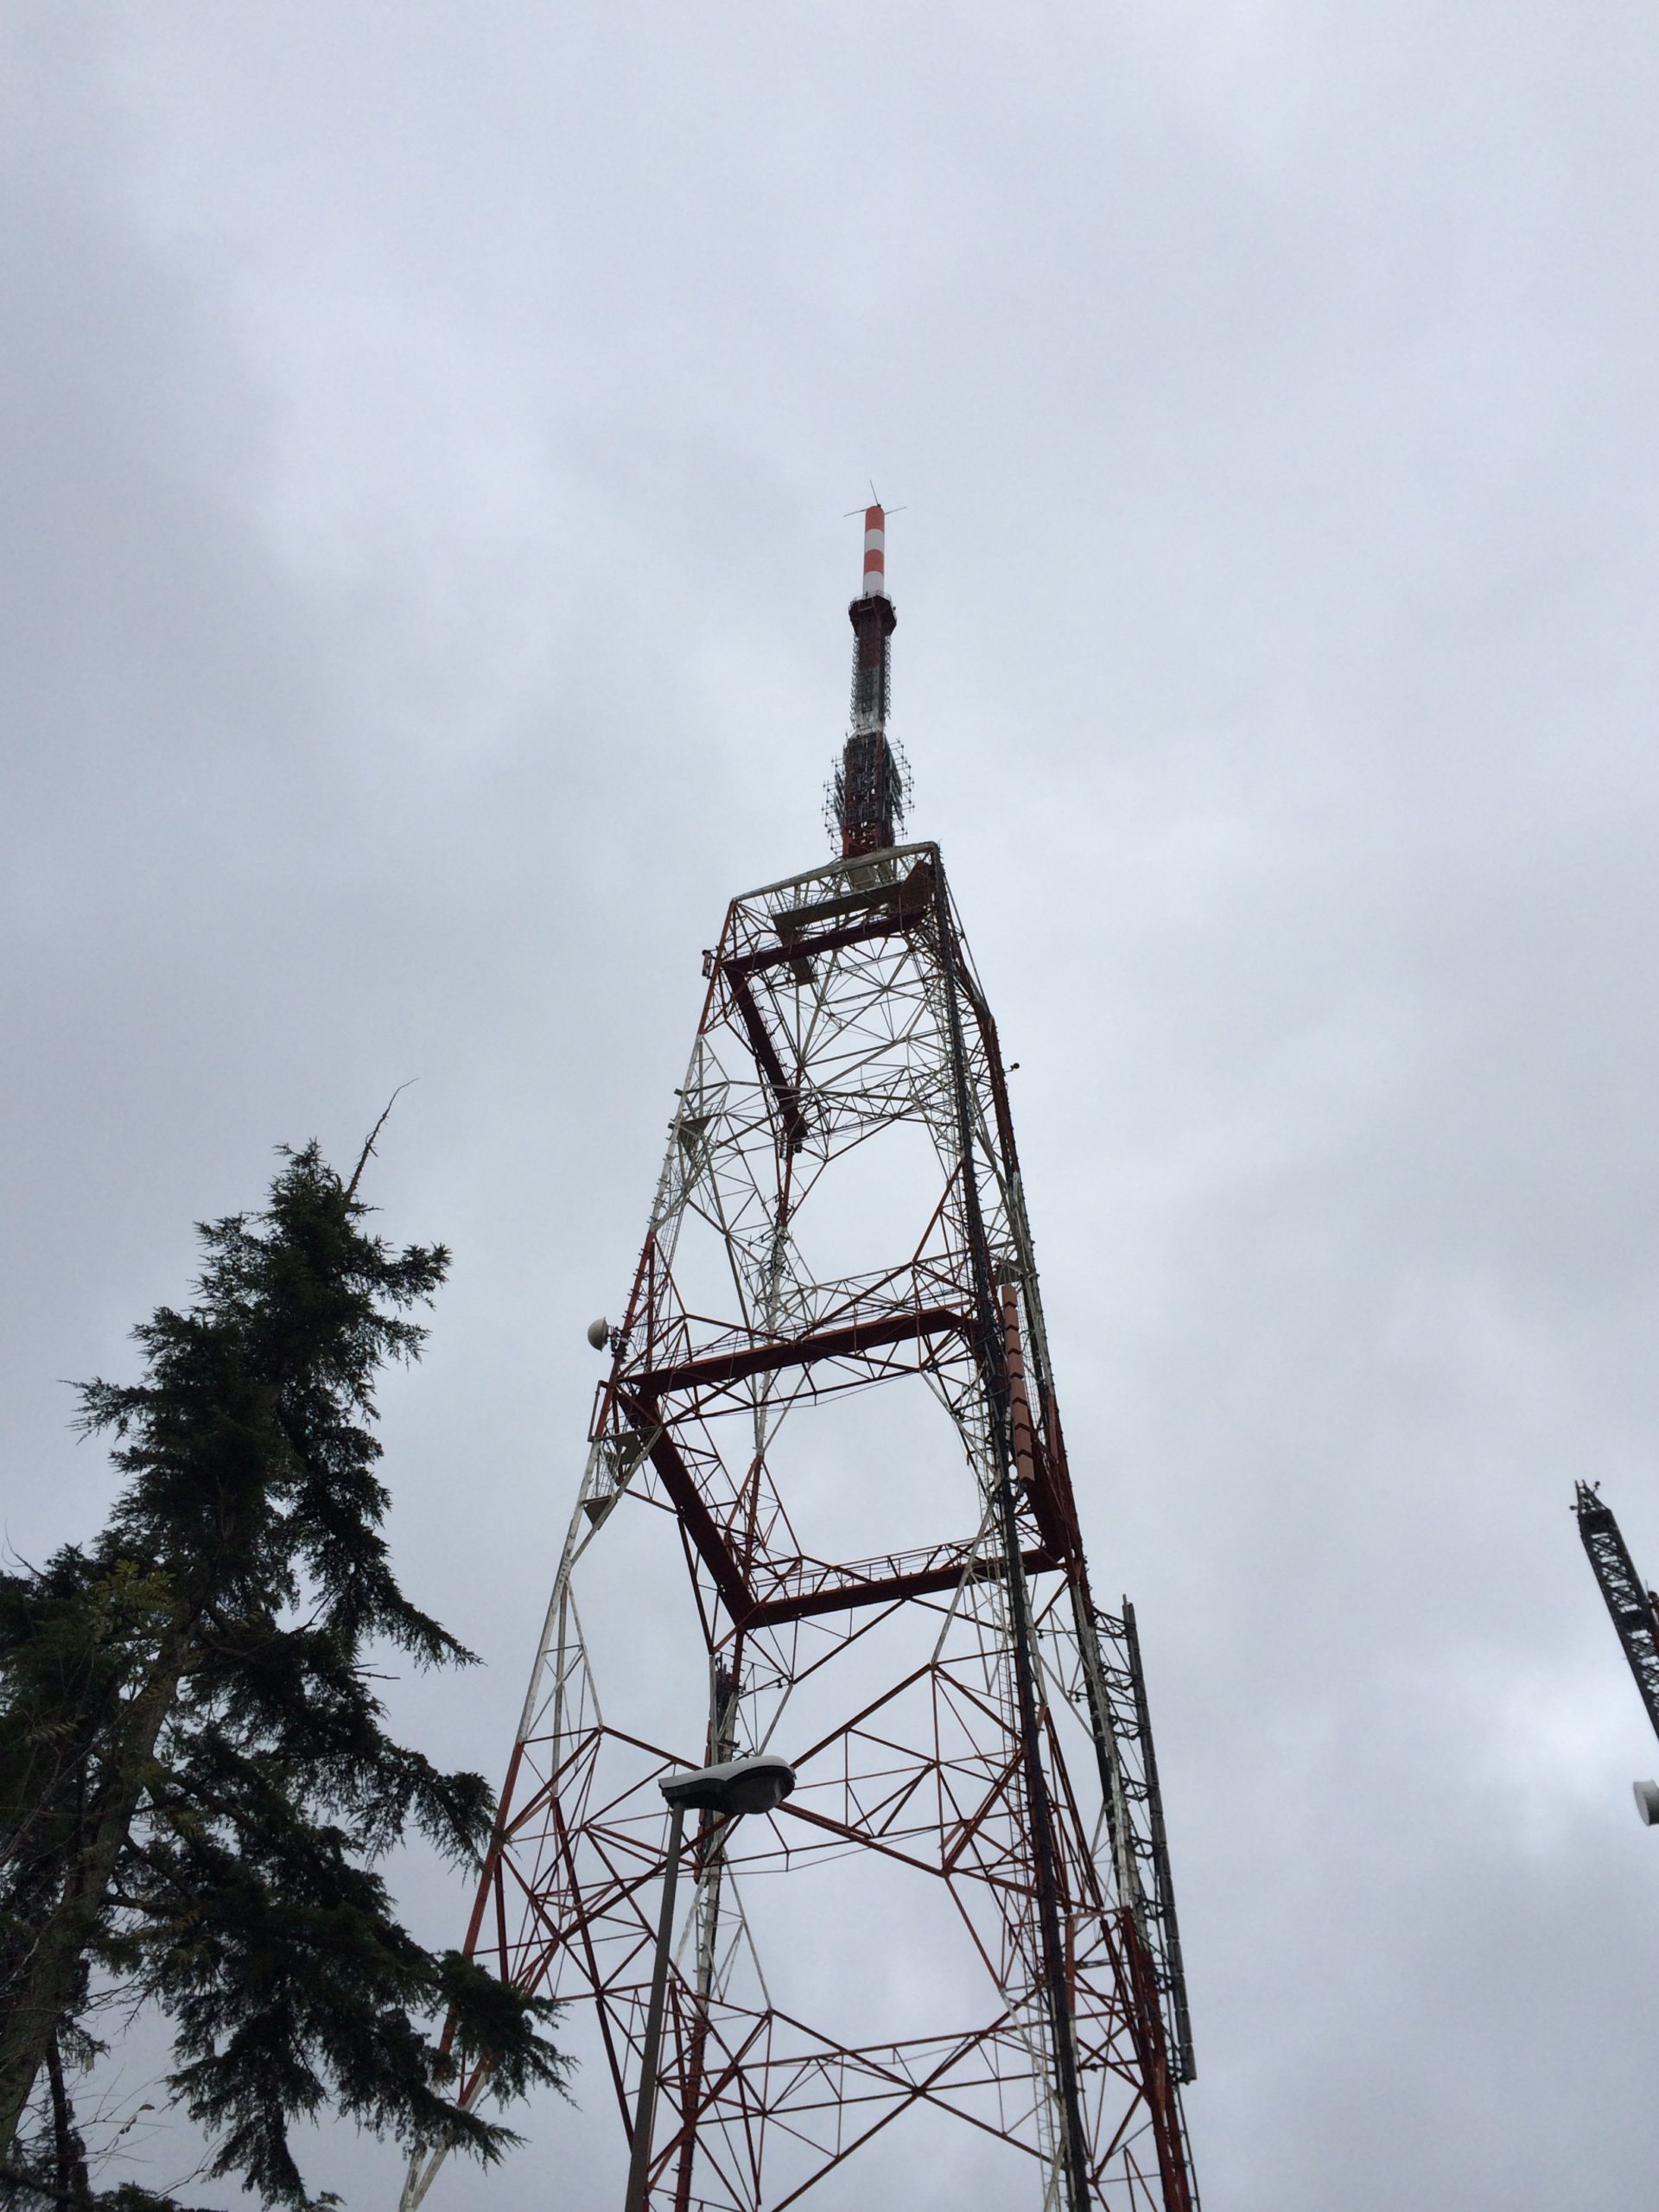 New FM antenna system at Martina Franca station, Martina Franca, Italy